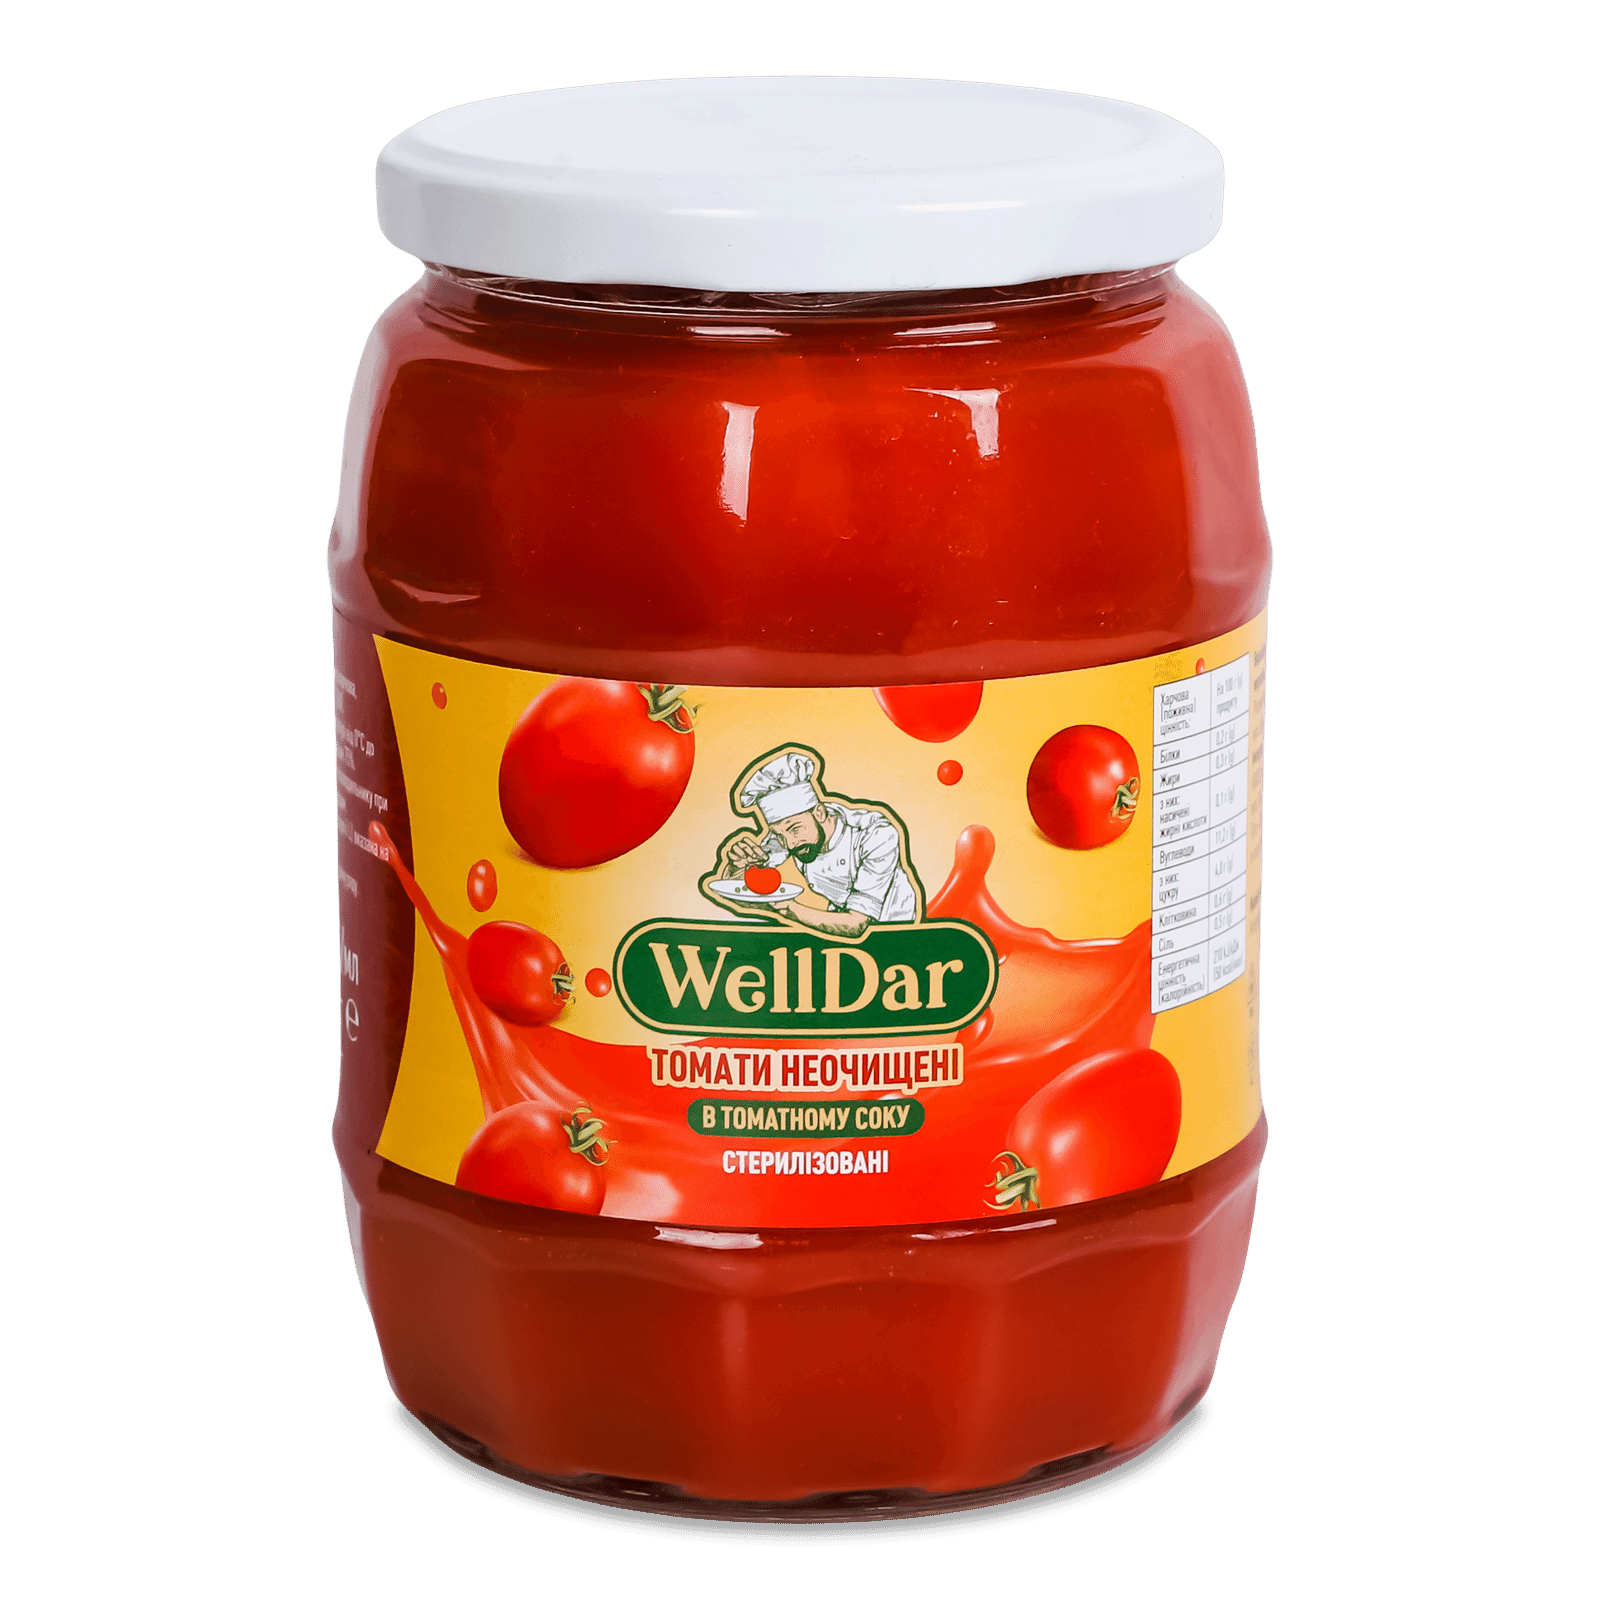 Томати WellDar неочищені у томатному соку стерилізовані - 1